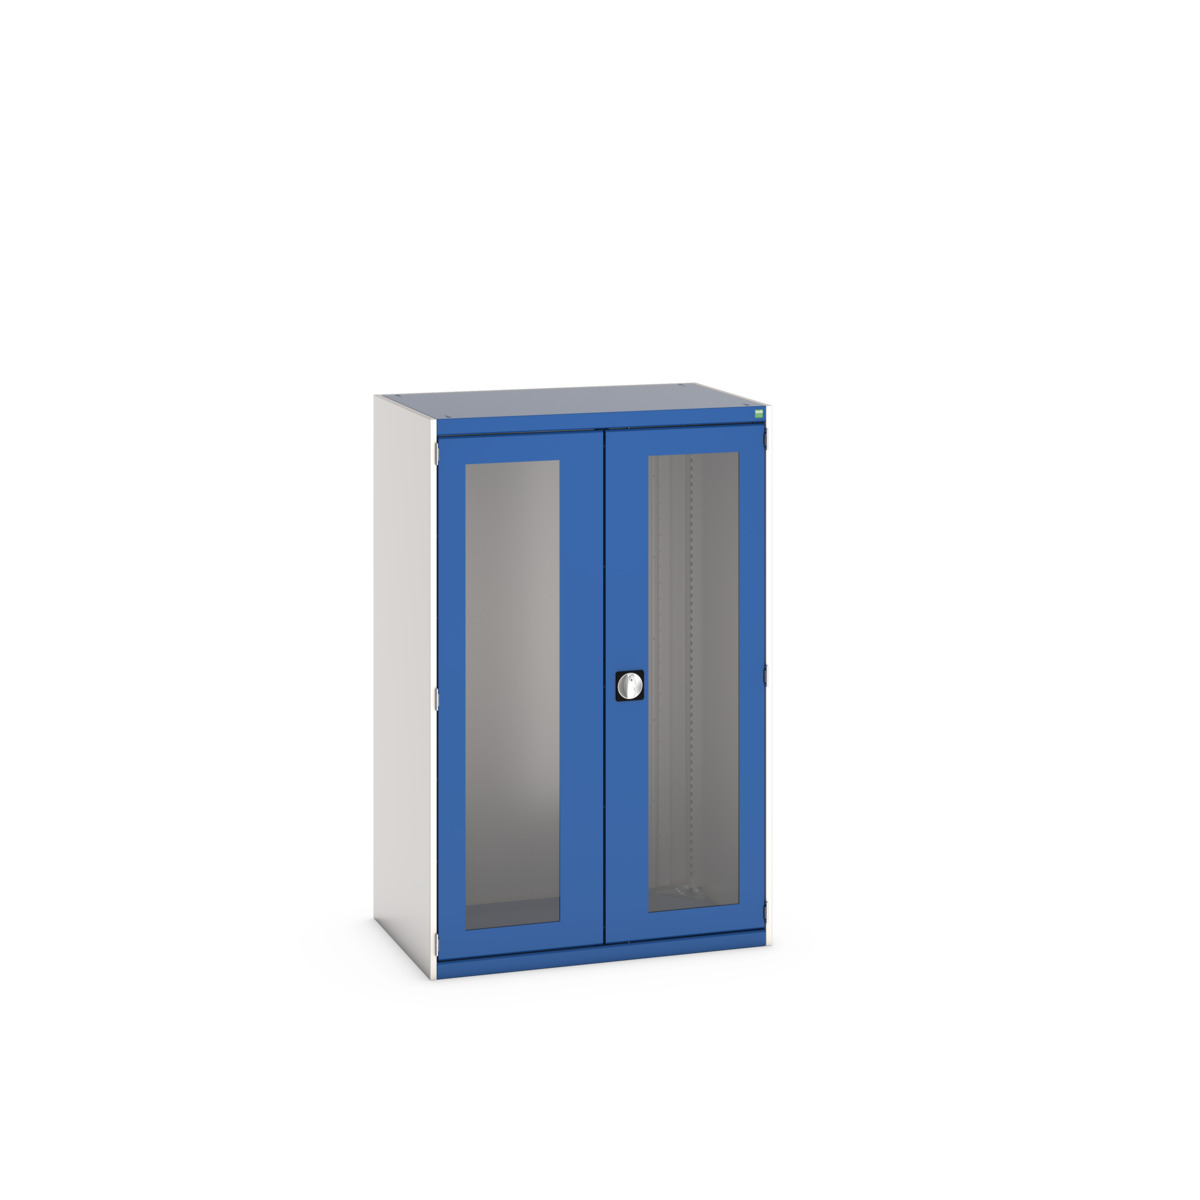 40013022.11V - cubio cupboard